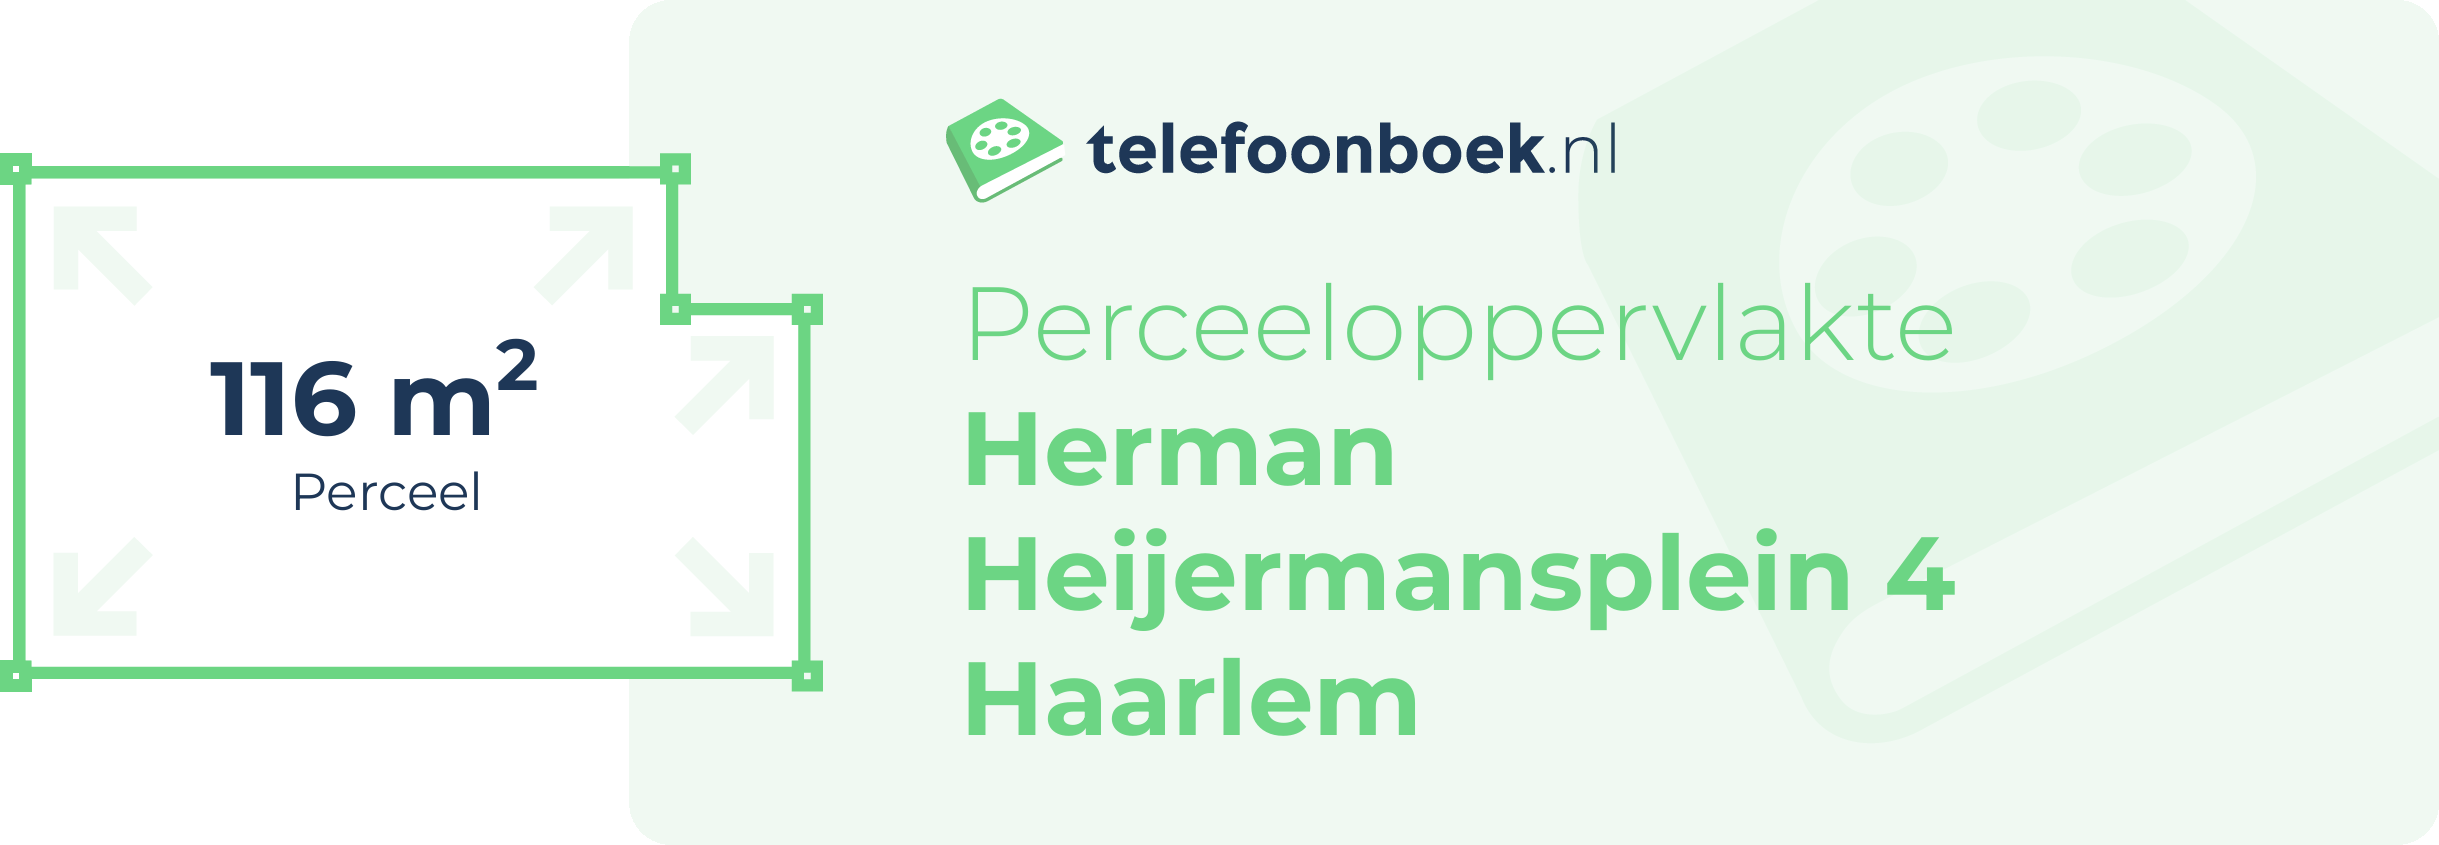 Perceeloppervlakte Herman Heijermansplein 4 Haarlem